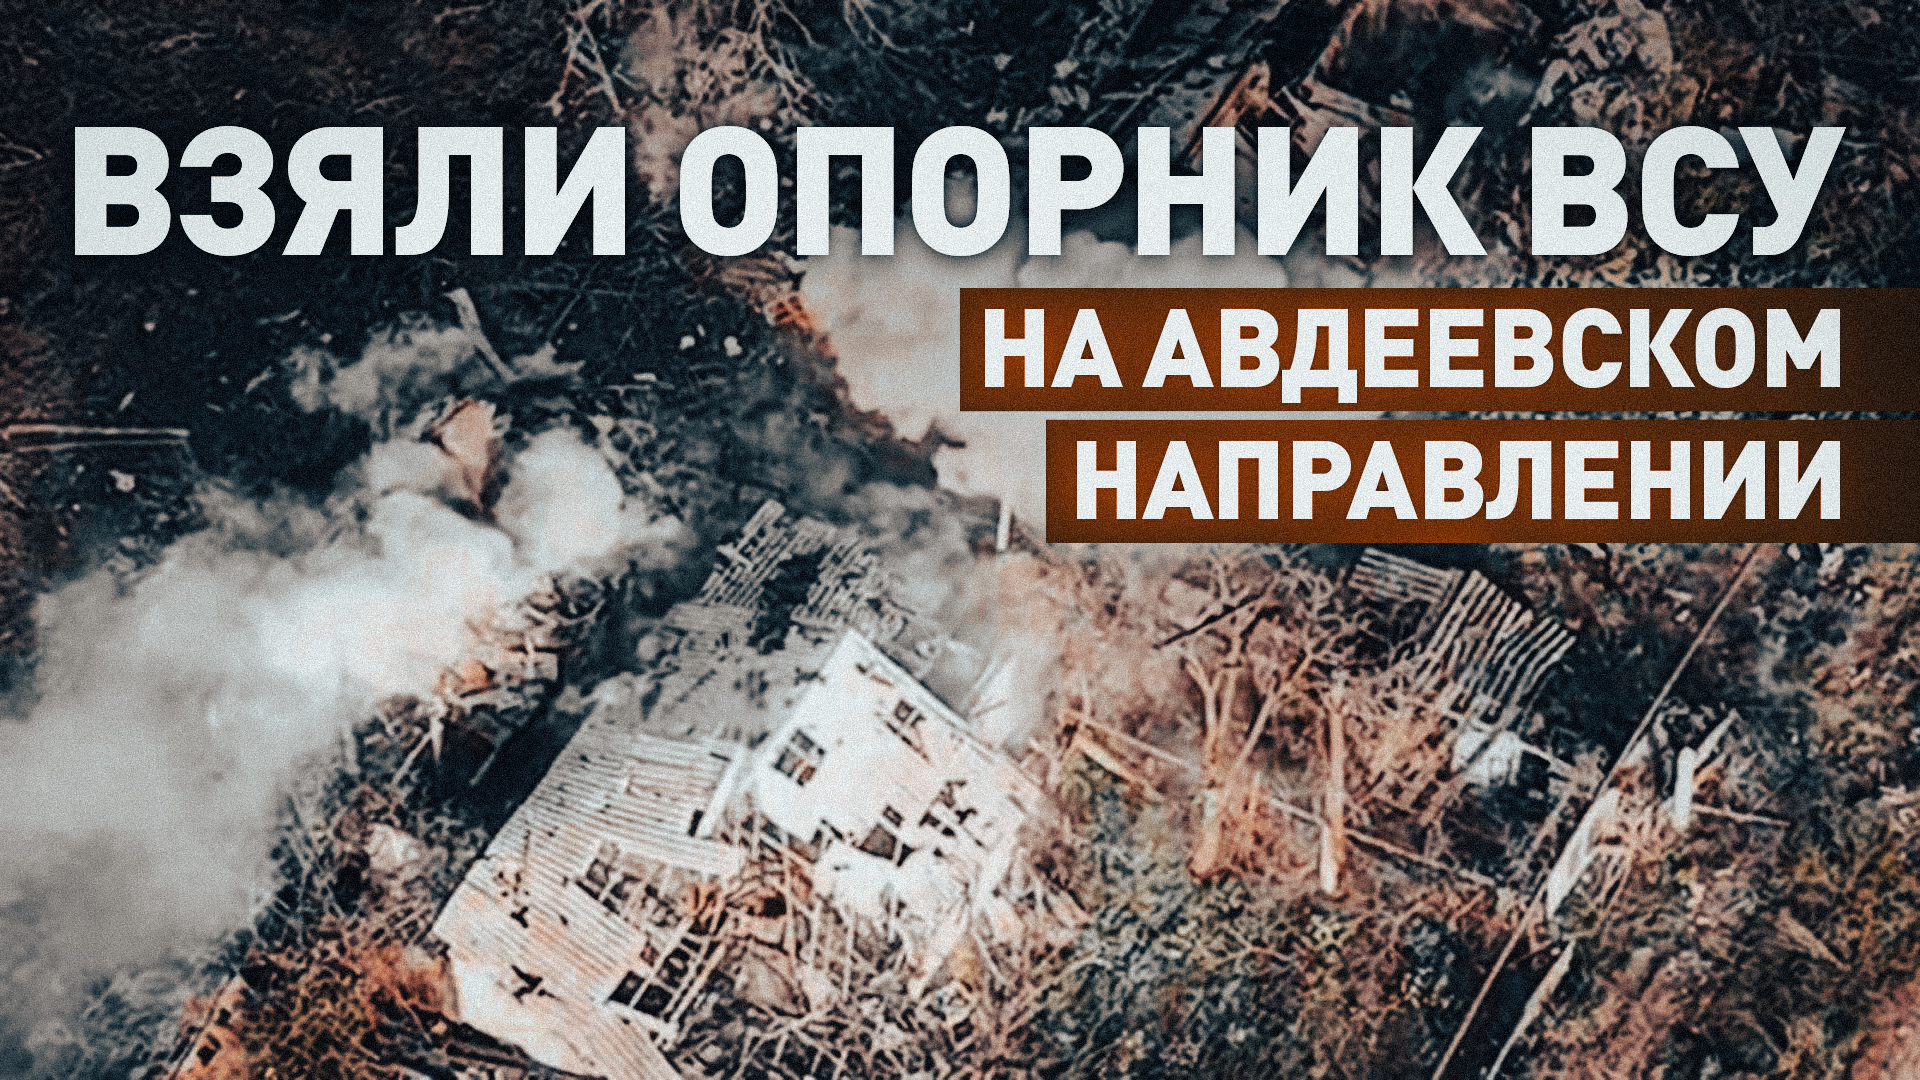 Российские штурмовики зачистили украинский опорник на Авдеевском направлении